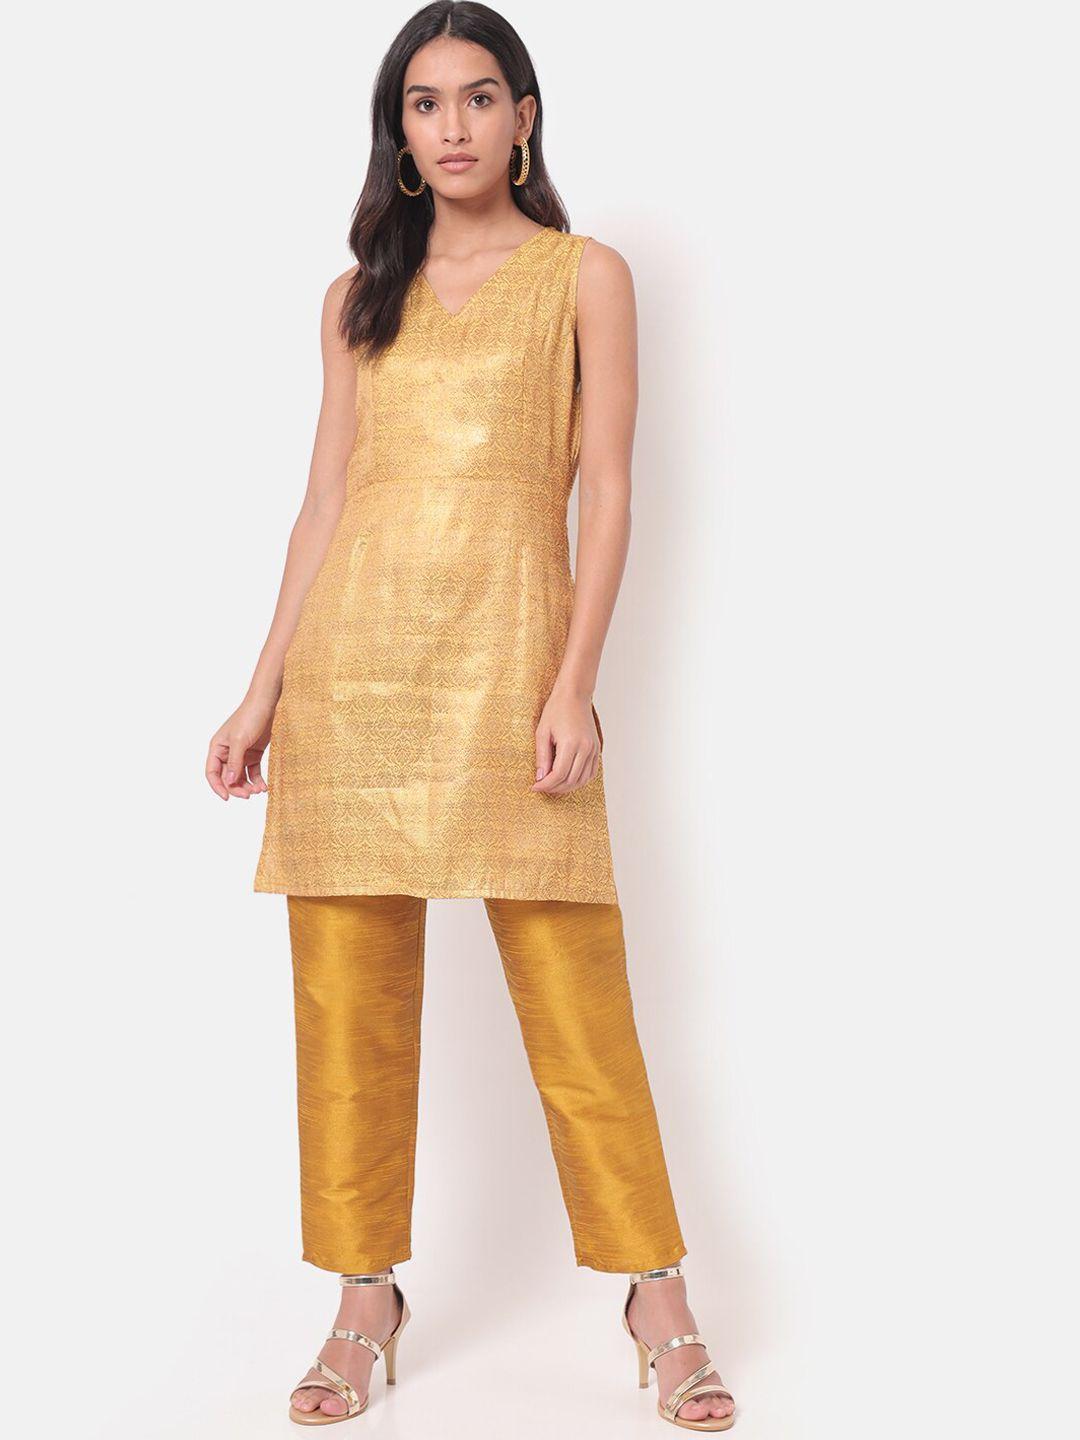 saaki women gold-toned dupion silk kurti with trousers